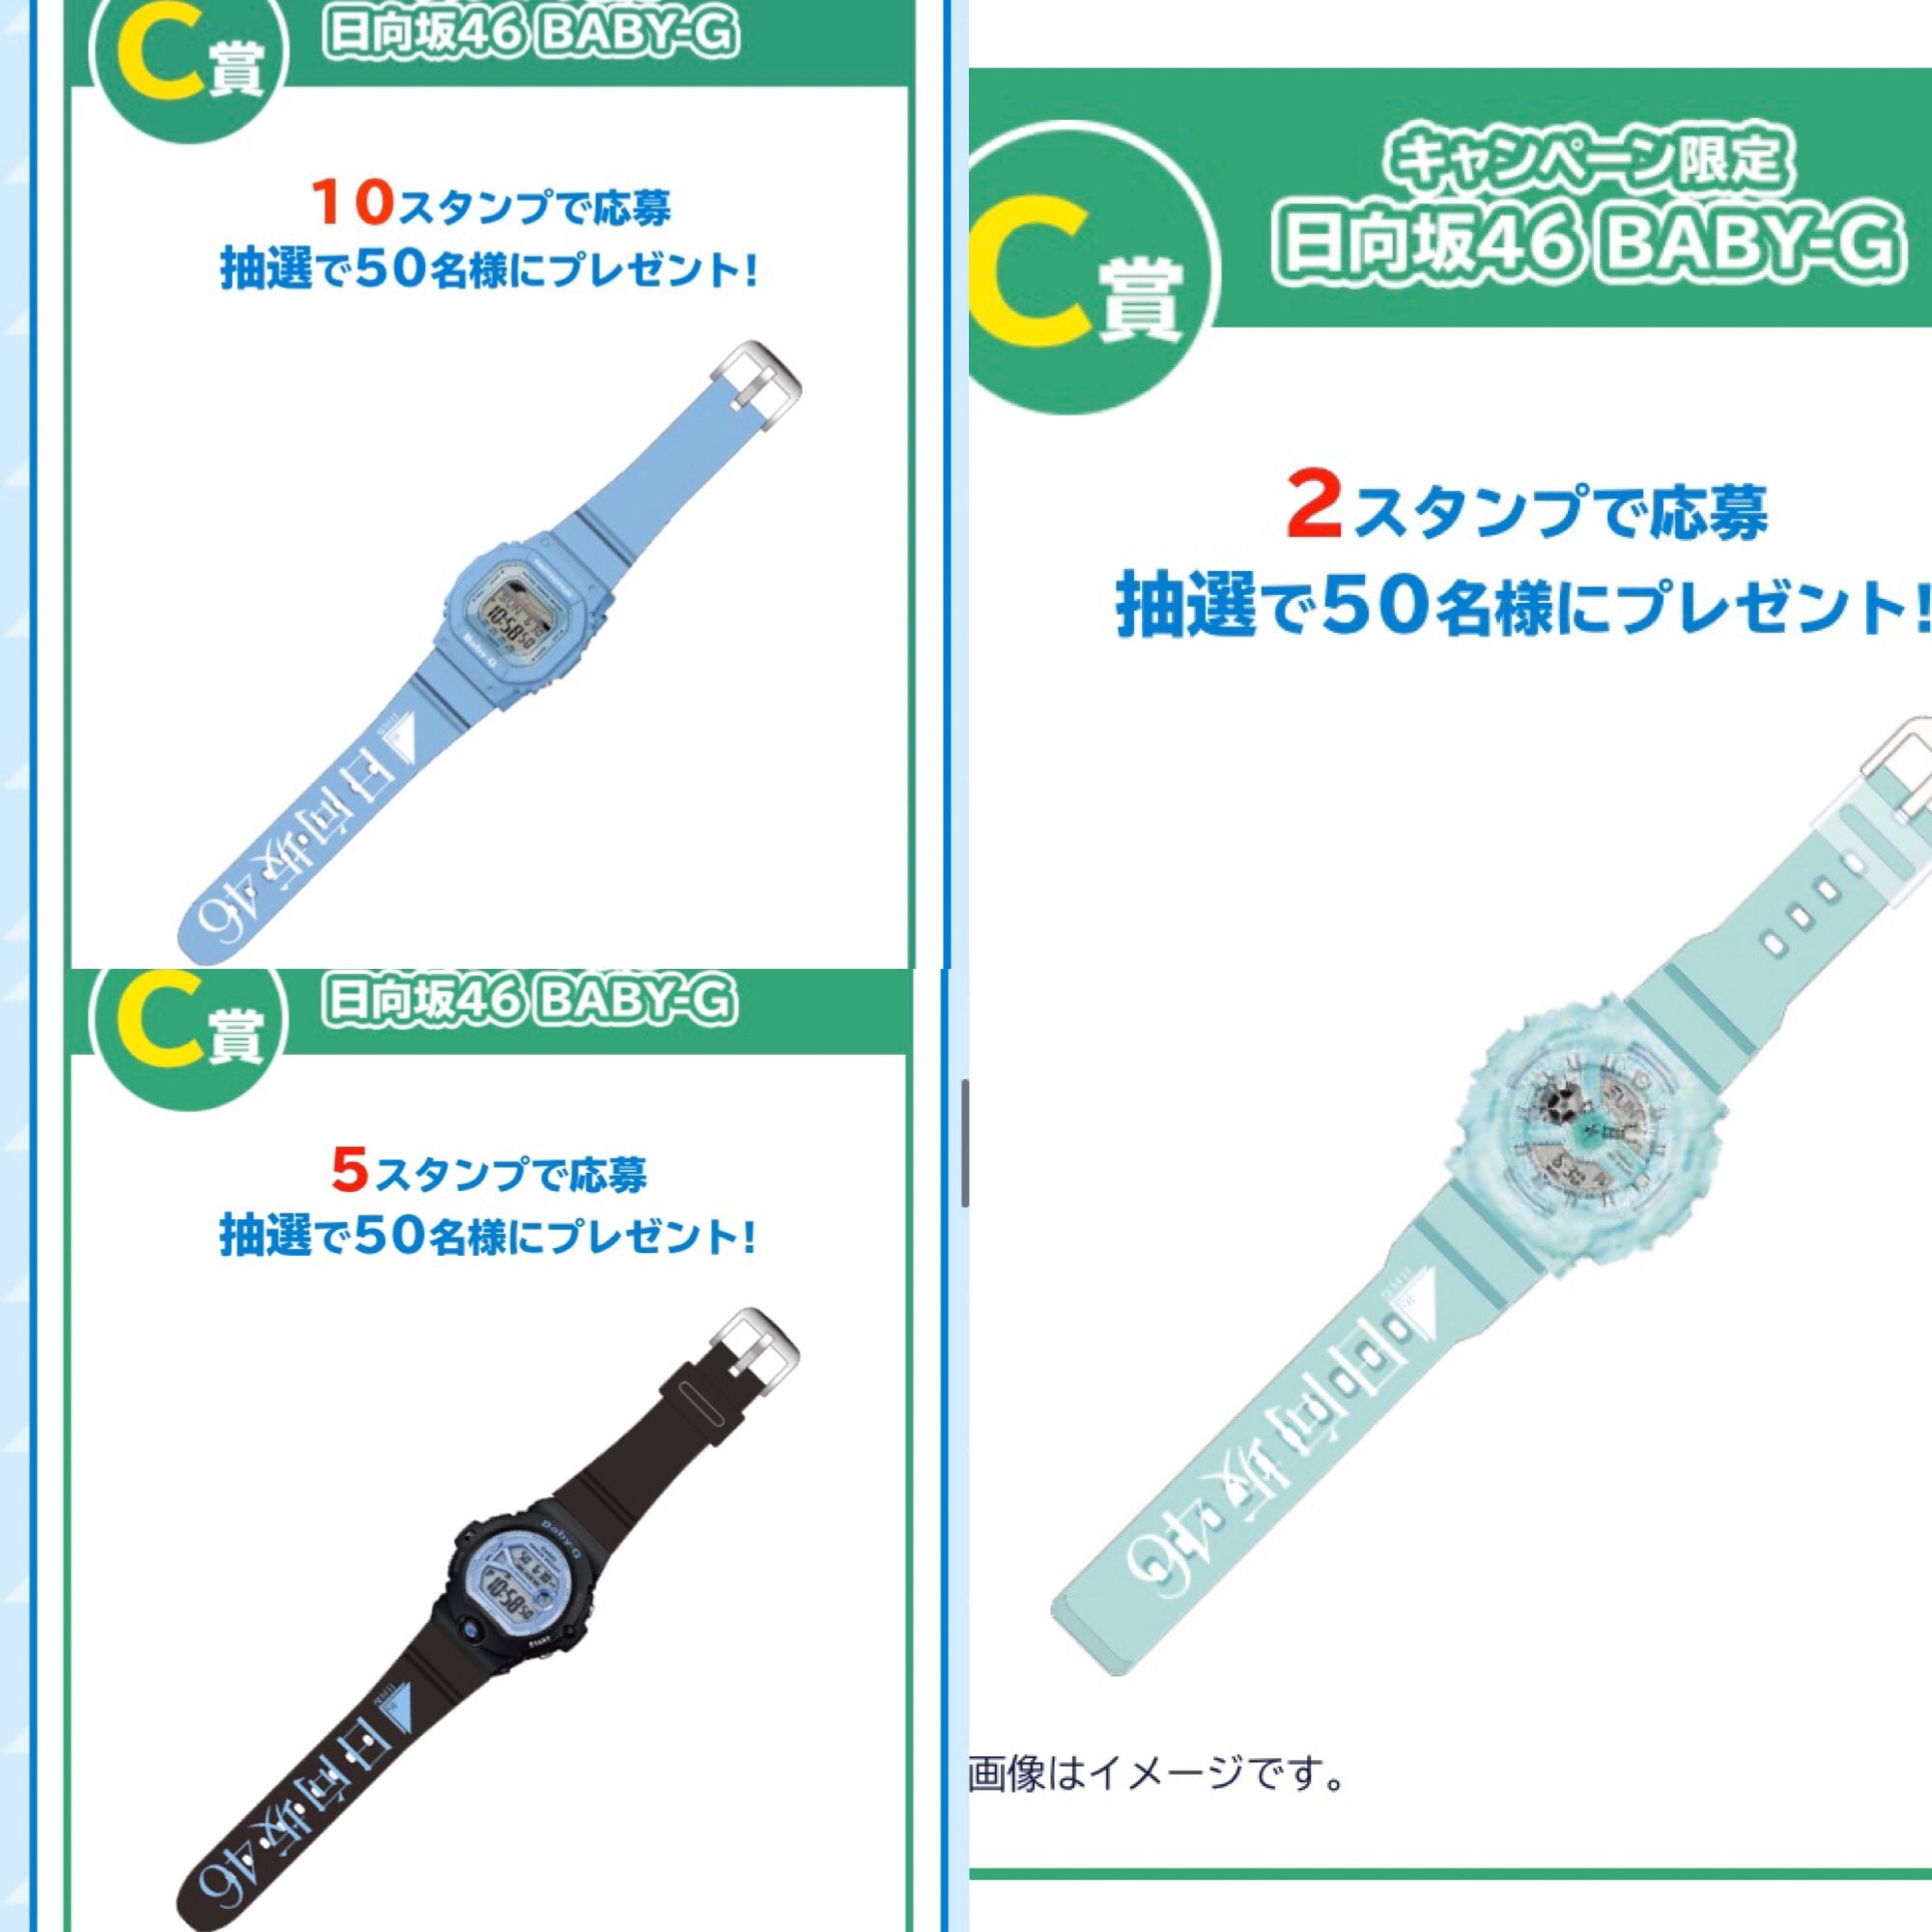 日向坂46 腕時計 ローソンキャンペーン 菓子コースC賞